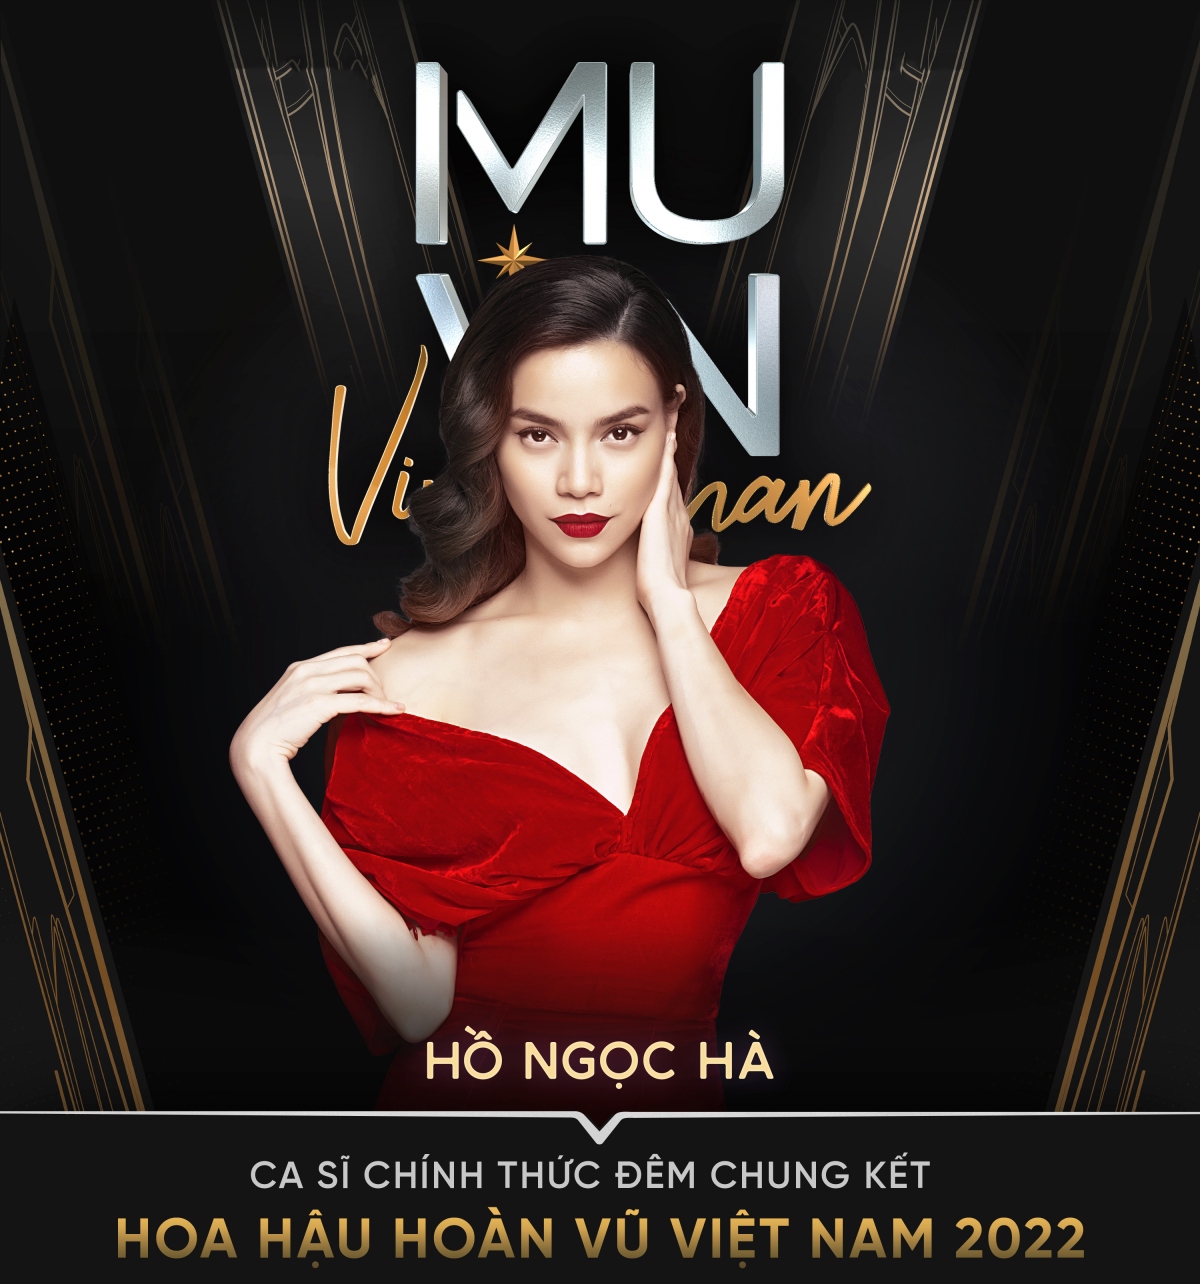 Hồ Ngọc Hà đảm nhiệm vị trí đặc biệt ở Chung kết Hoa hậu Hoàn vũ Việt Nam 2022